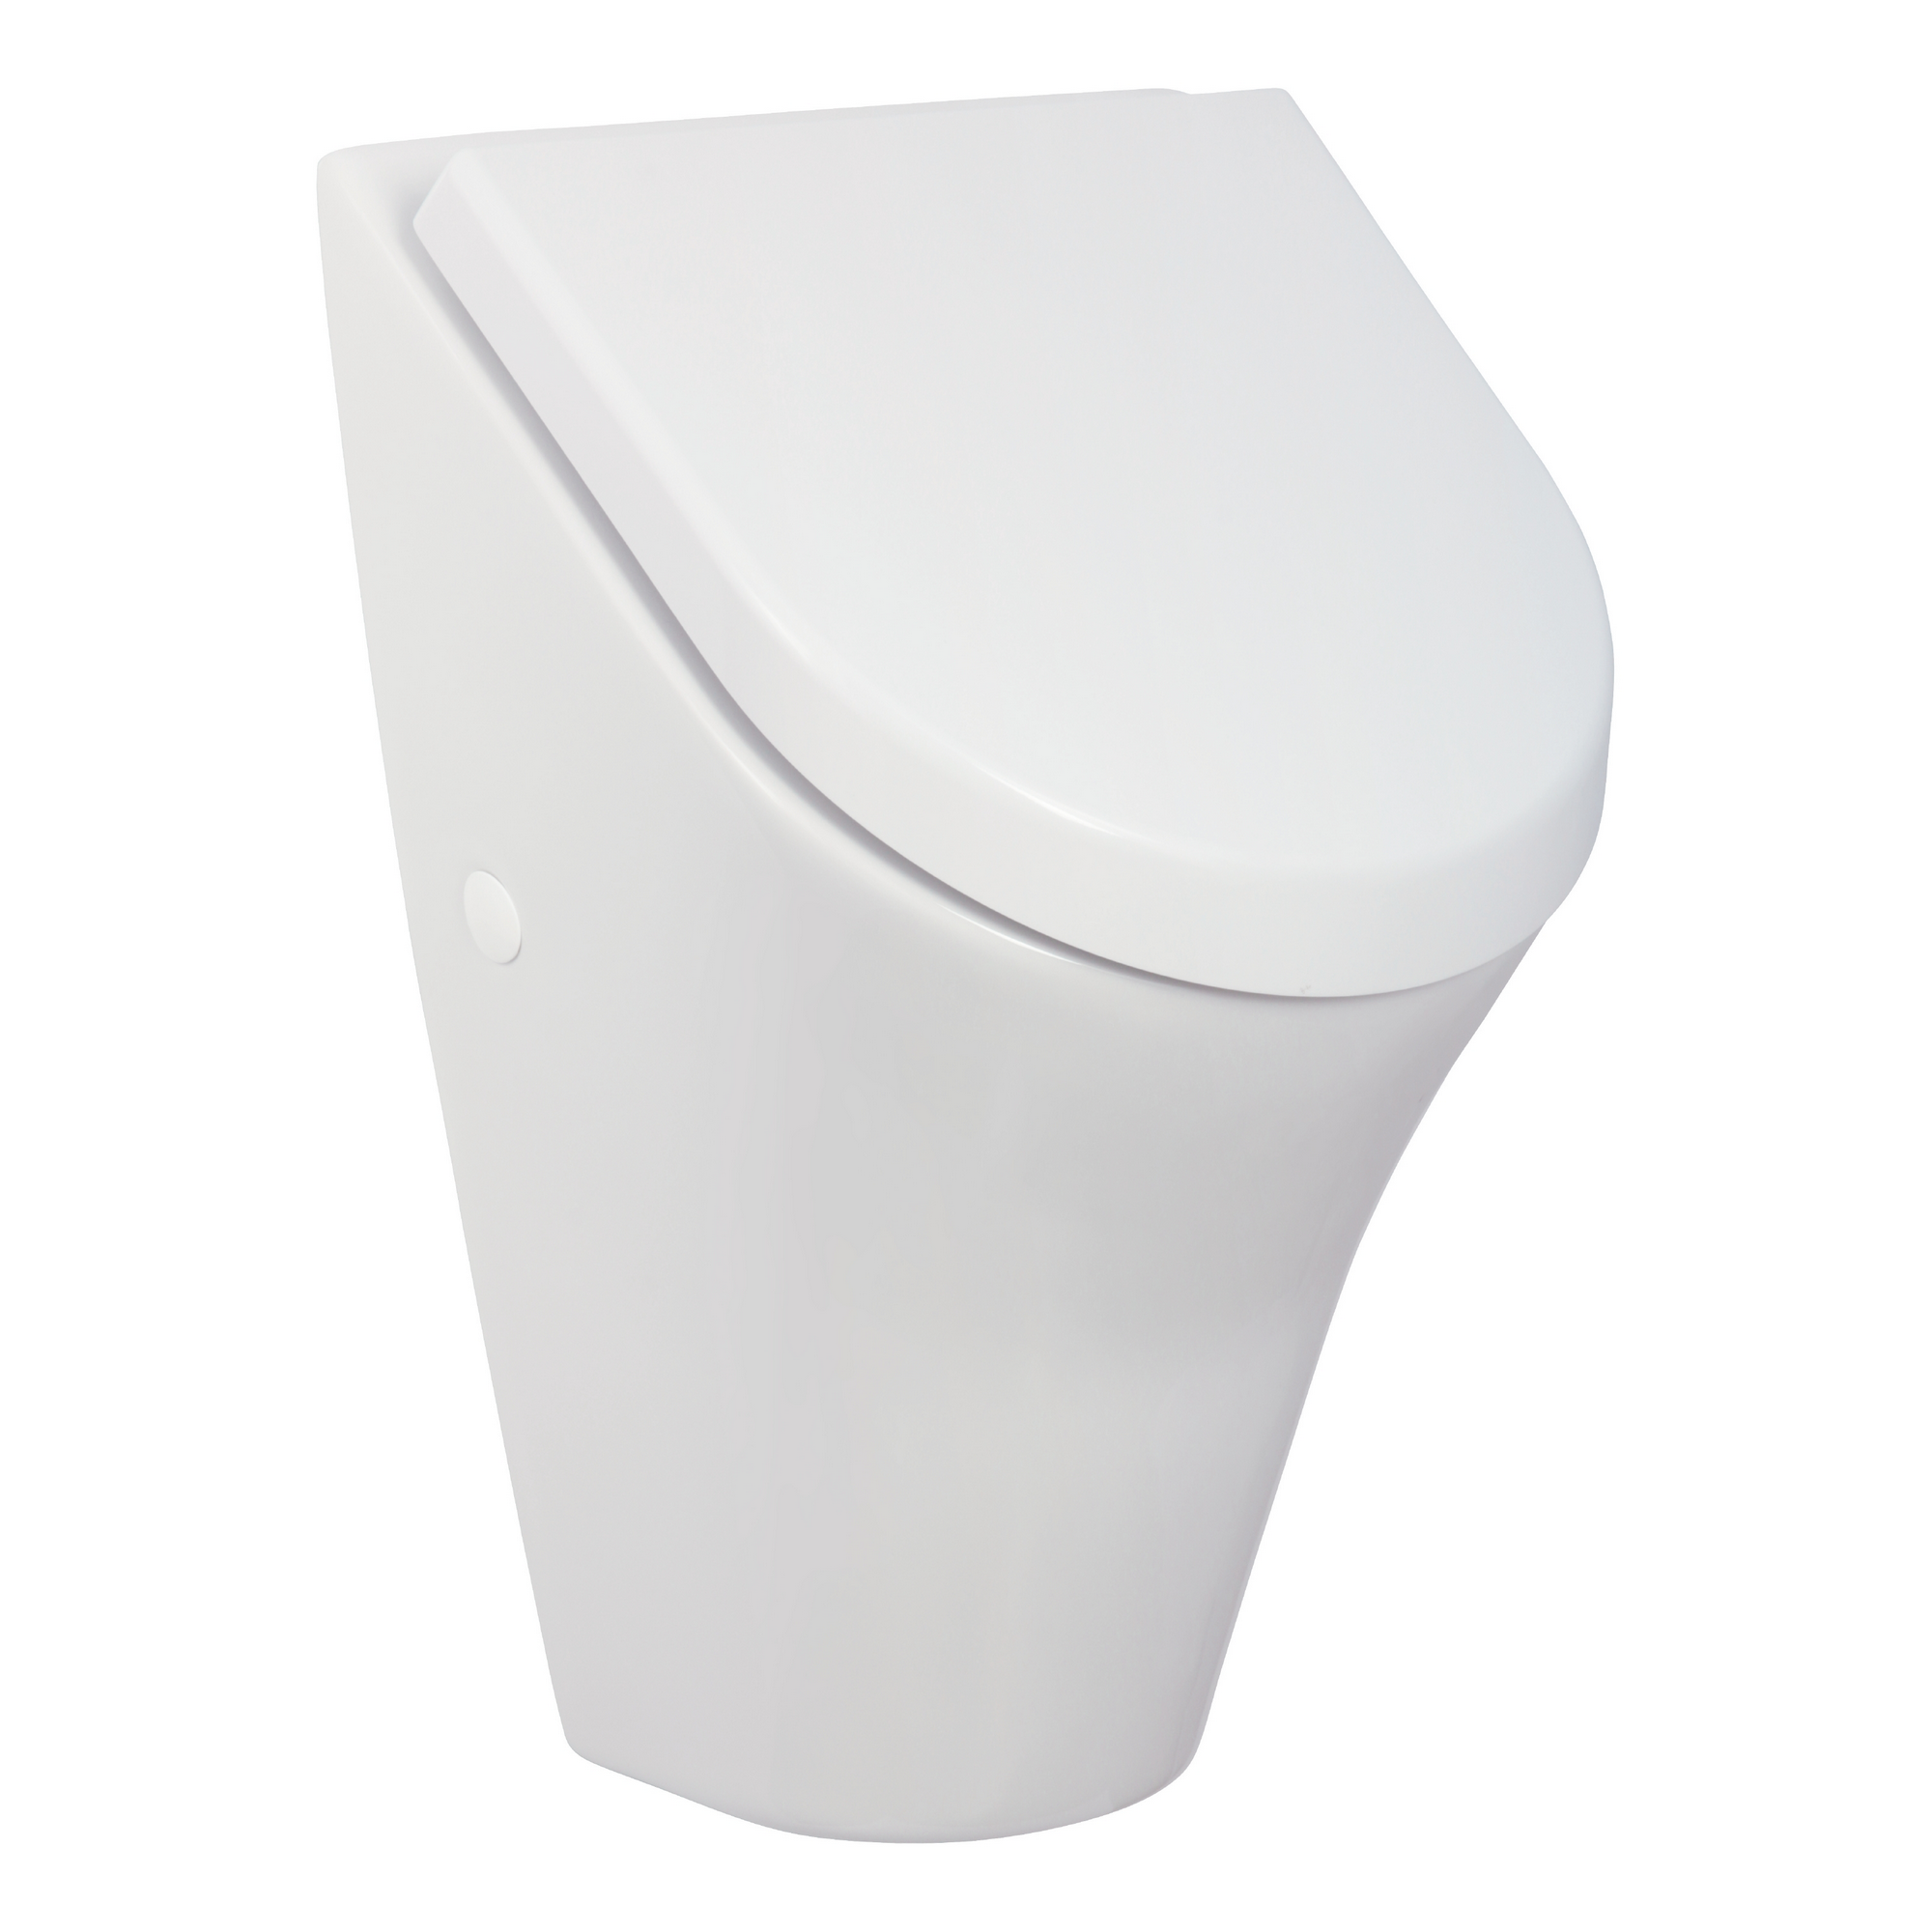 Urinal-Set 'Ridaro' weiß 31 x 49 x 28 cm, mit Deckel + product picture